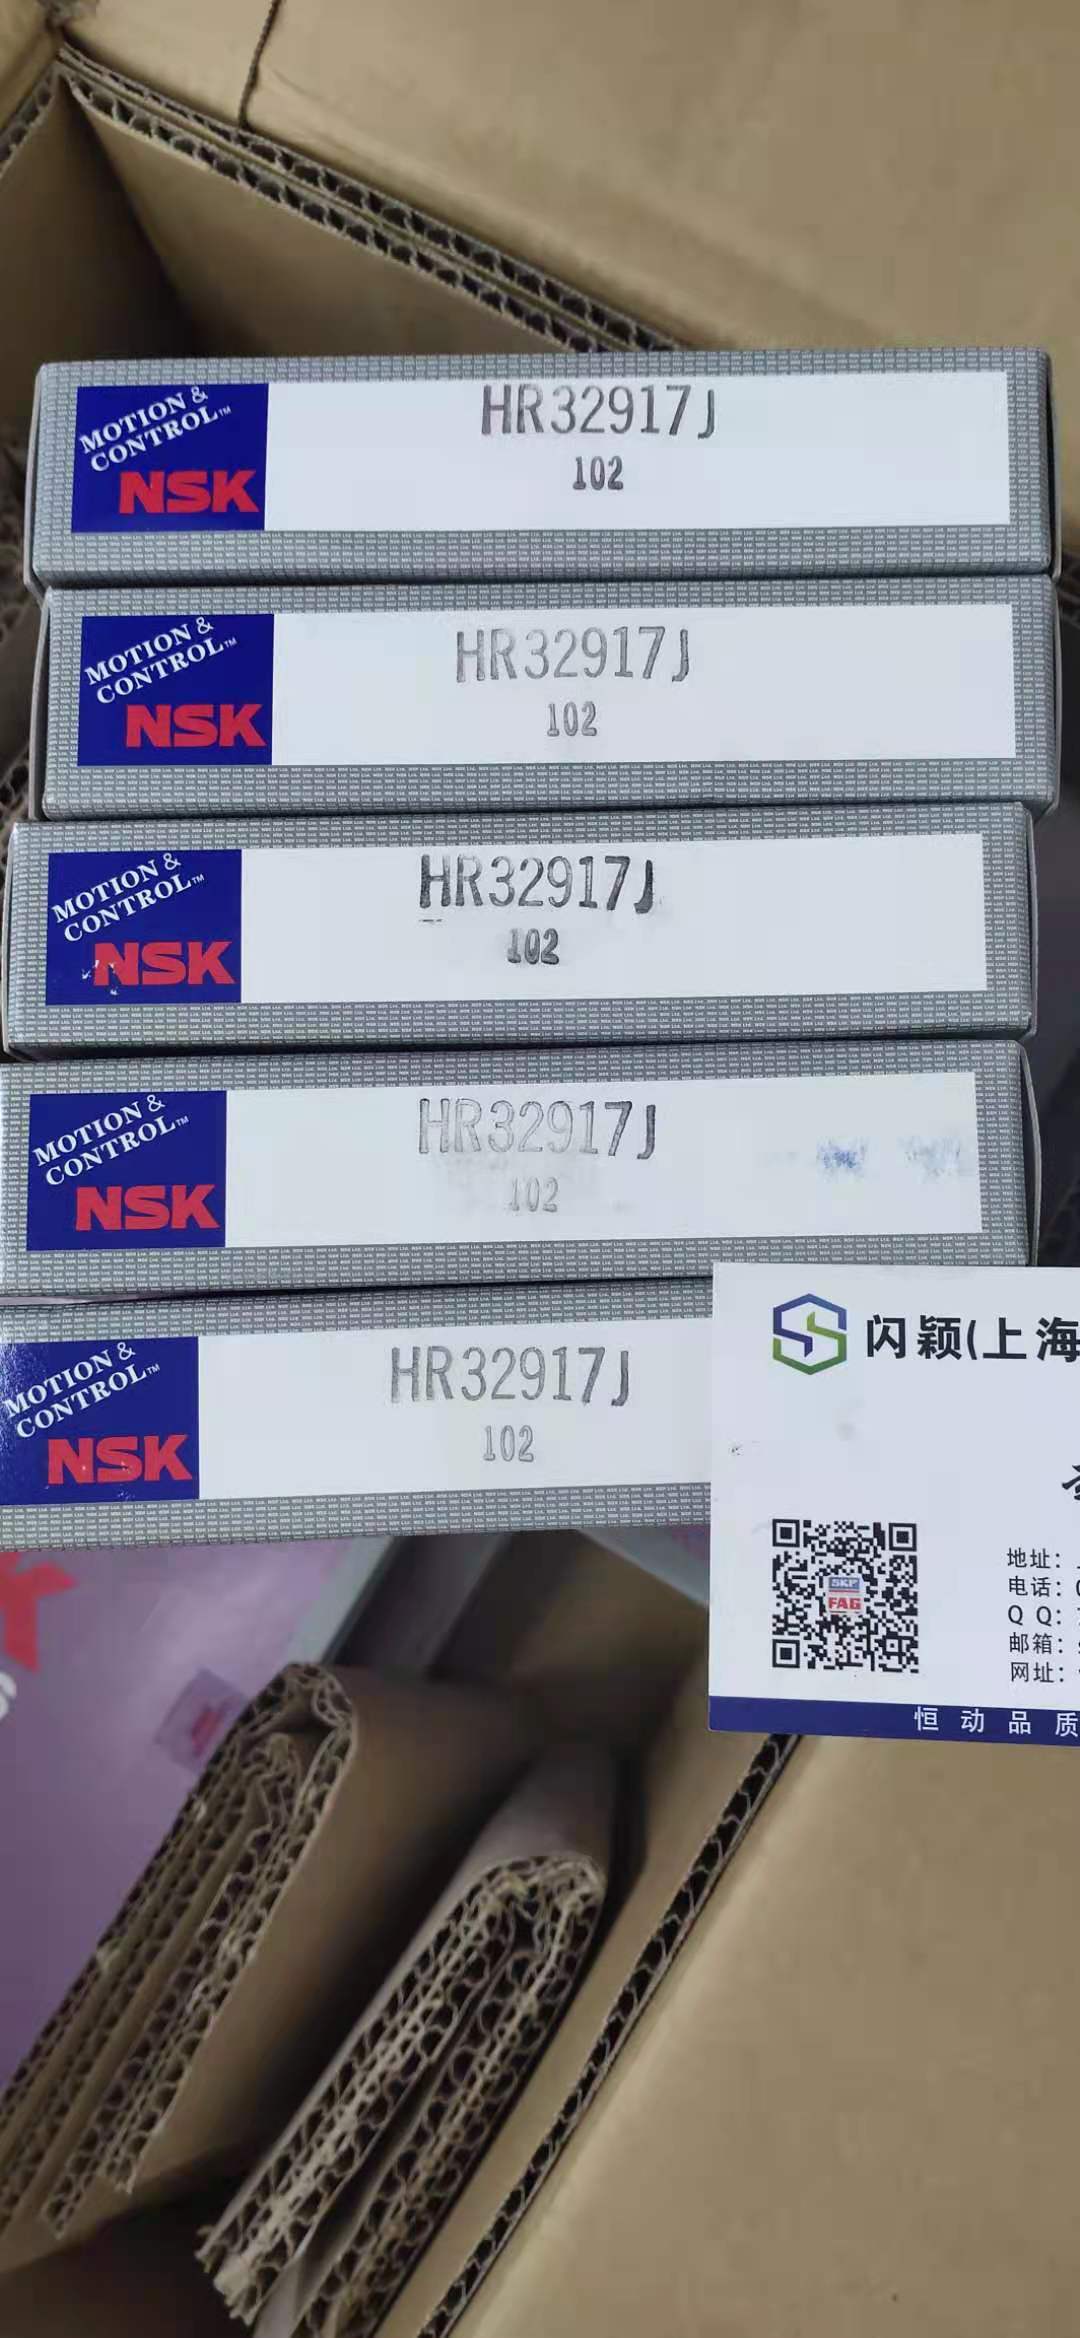 浙江恩斯凯工业技术有限公司 浙江NSK轴承